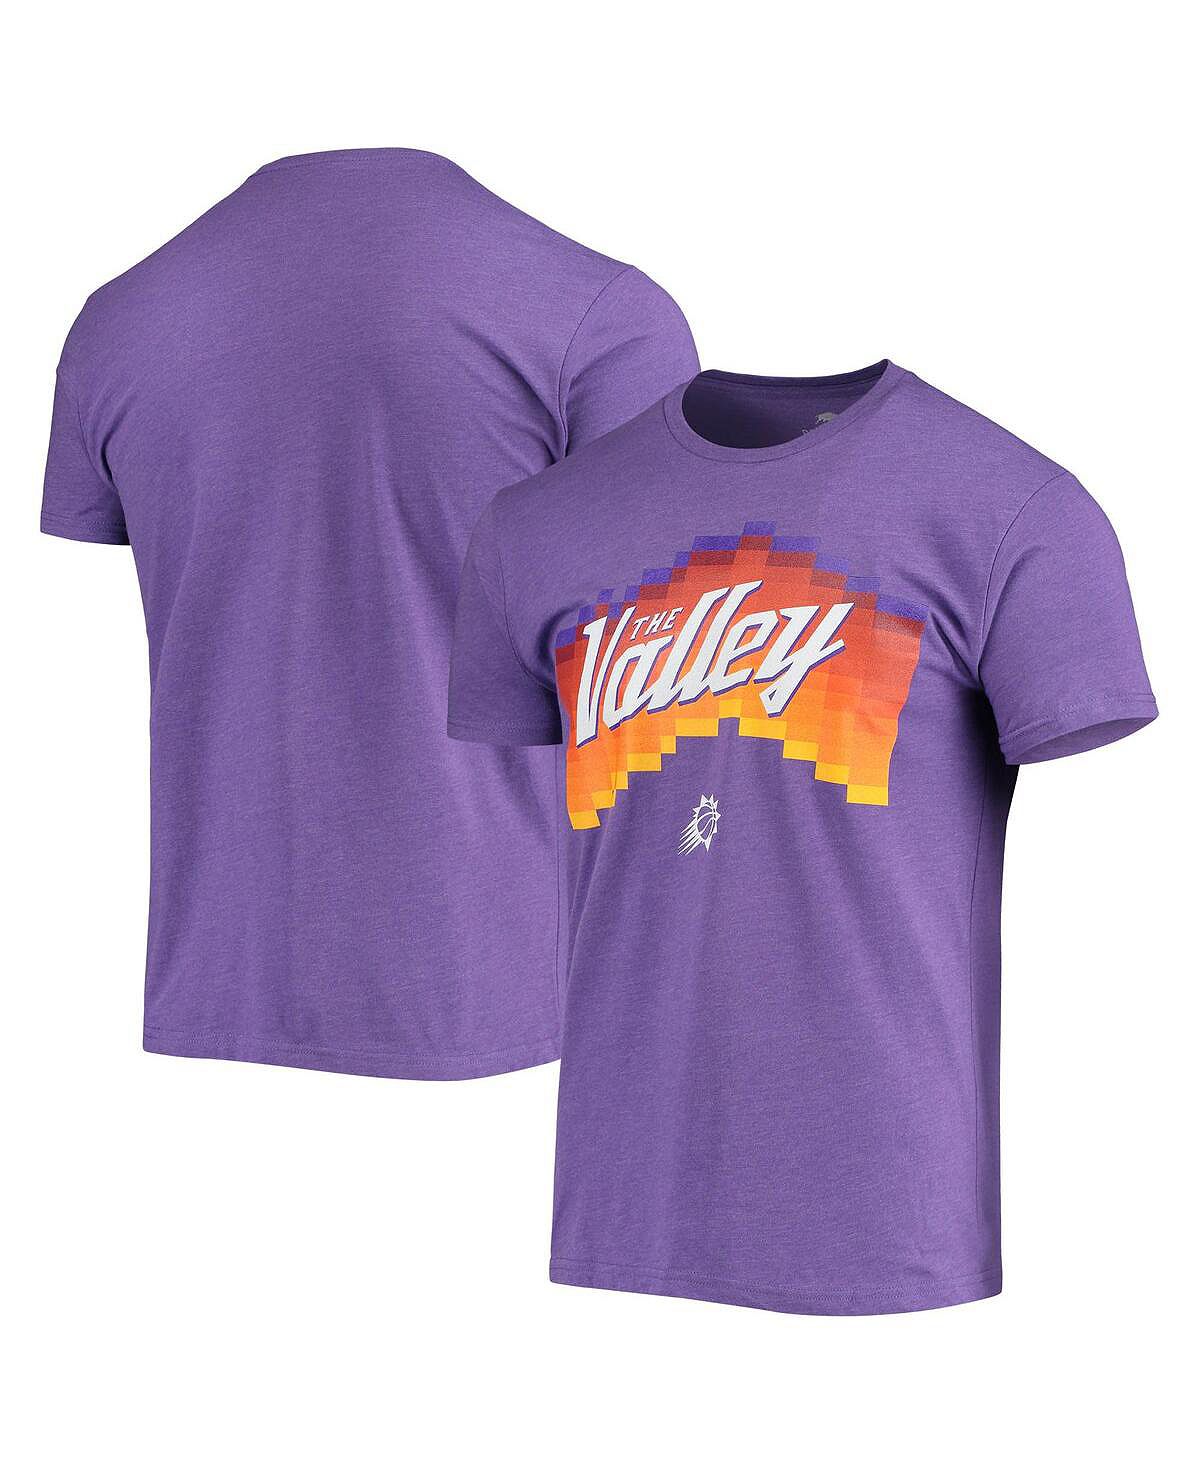 Мужская фиолетовая футболка phoenix suns the valley pixel city edition davis Sportiqe, фиолетовый marvel s midnight suns enhanced edition английская версия ps5